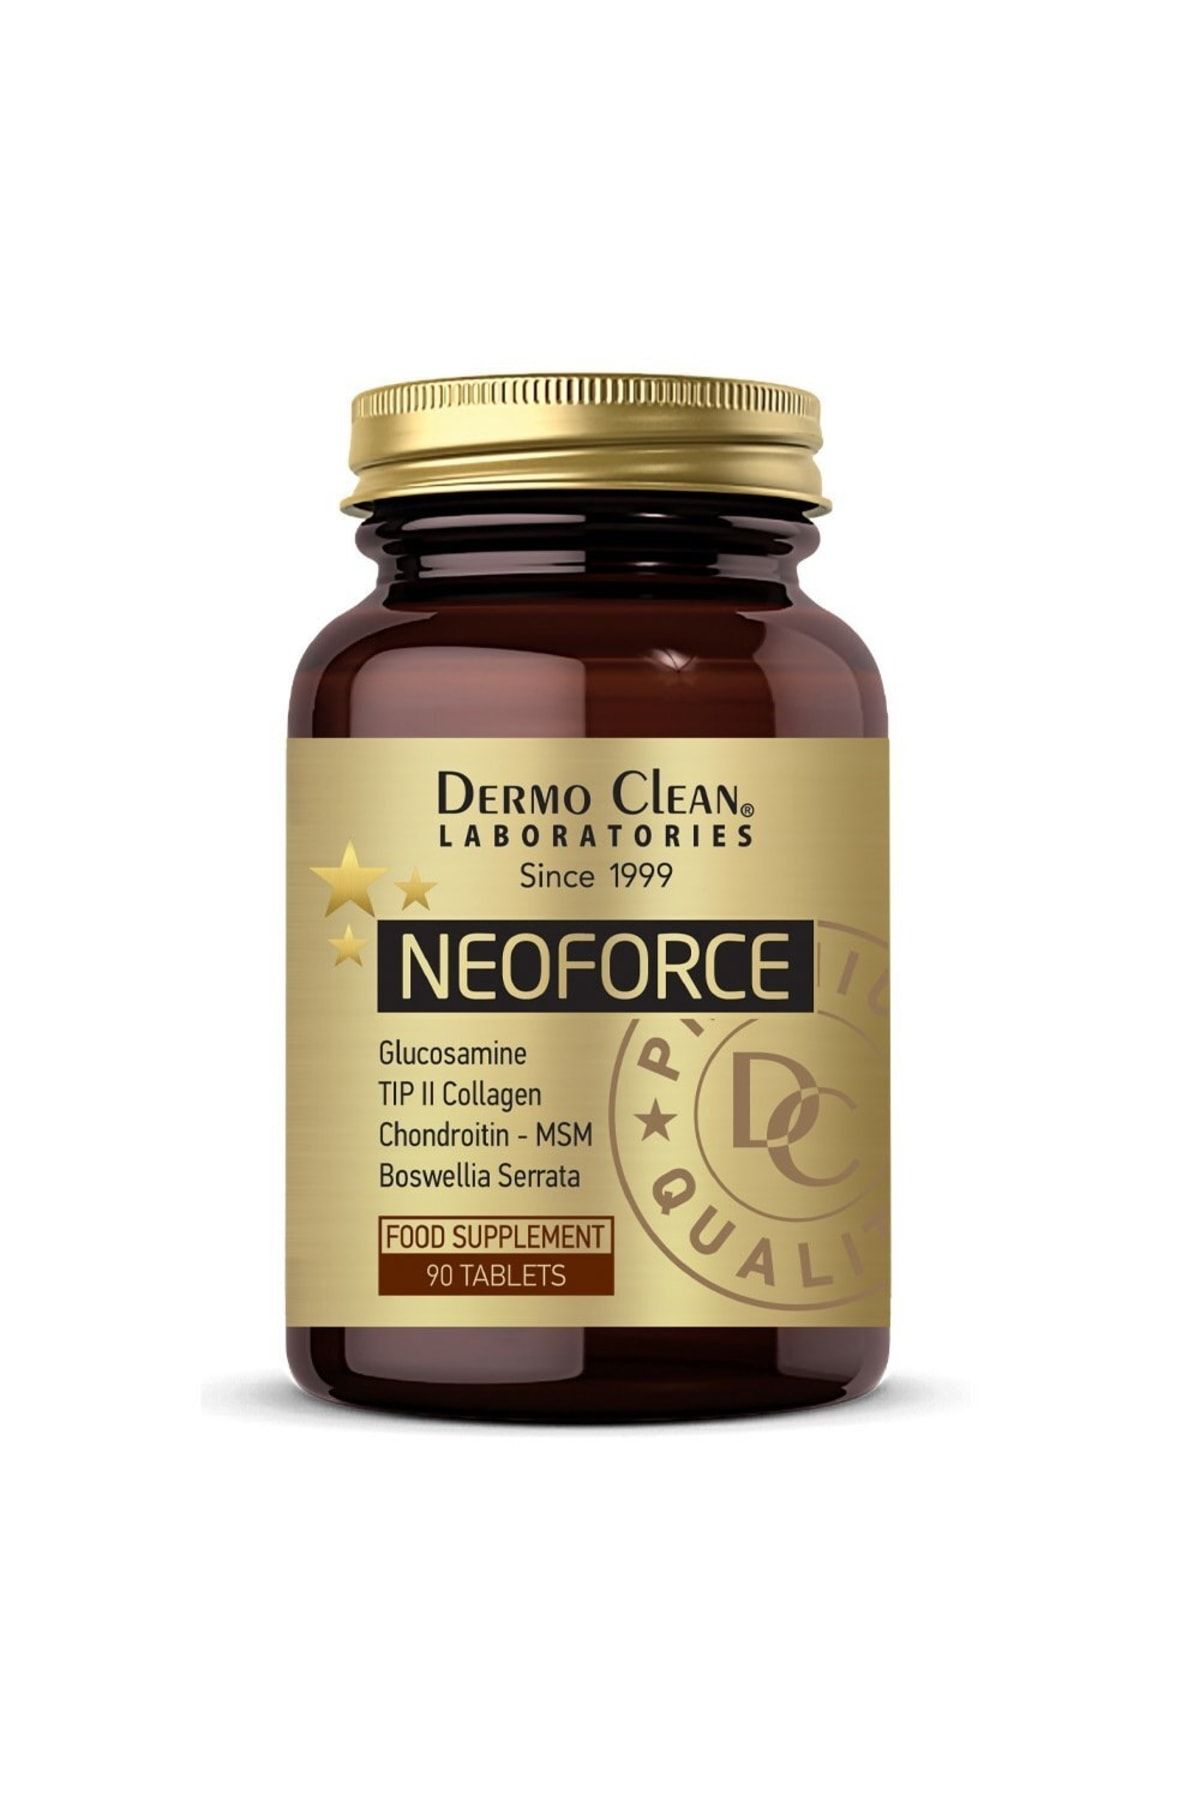 Dermo Clean Neoforce Tıp 2 Collagen